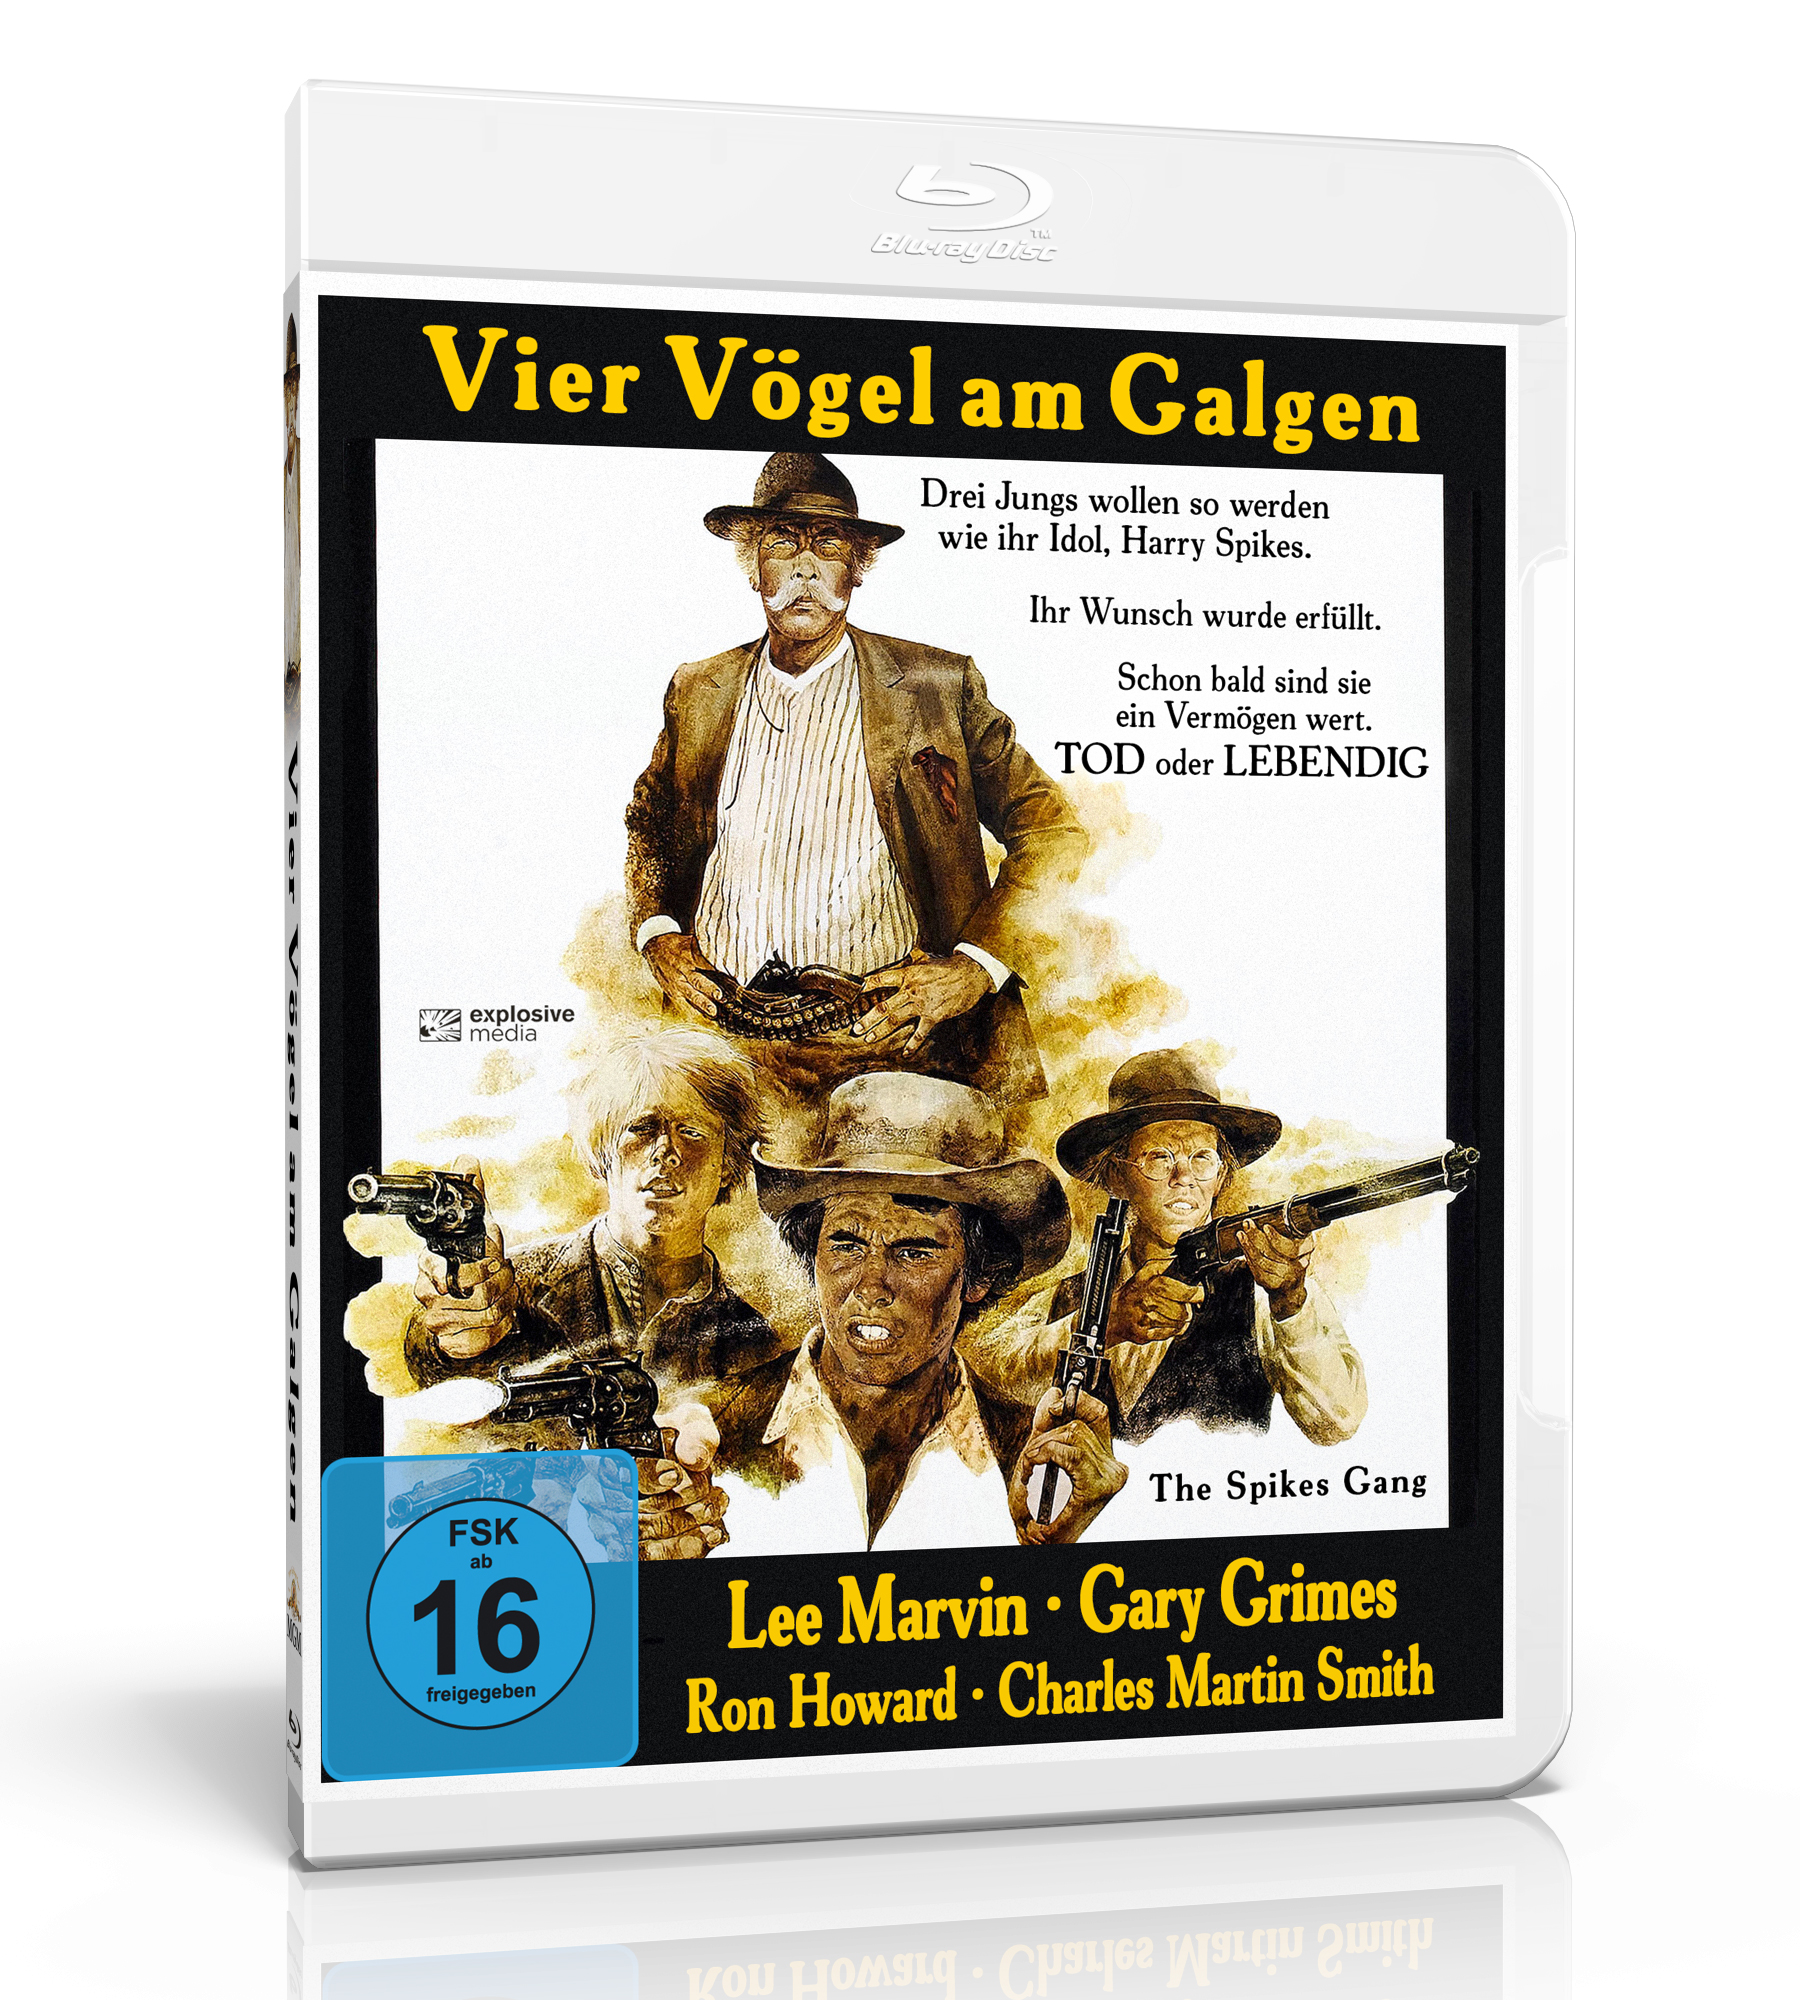 Vier Vögel am Galgen (The Spikes Gang) (Blu-Ray) - Explosive-Media